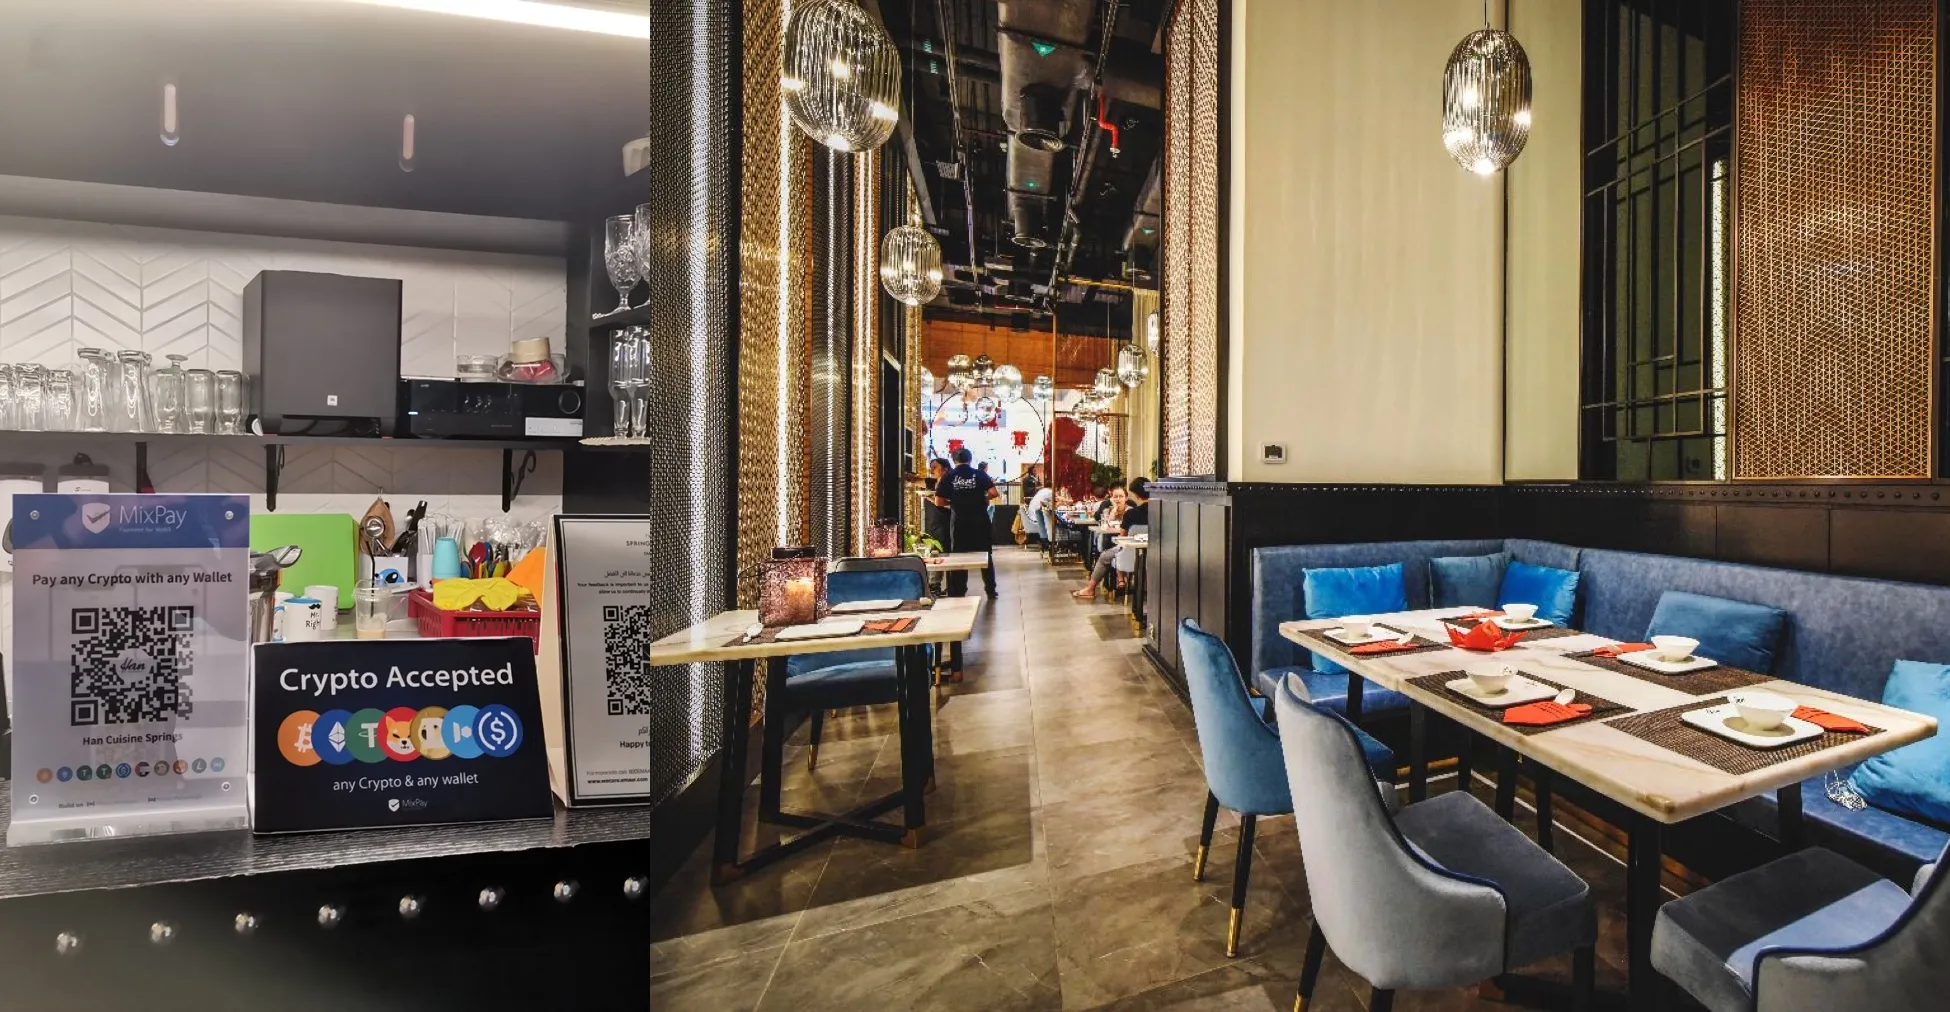 Han Cuisine Restaurant i MixPay osiągnęły strategiczne partnerstwo